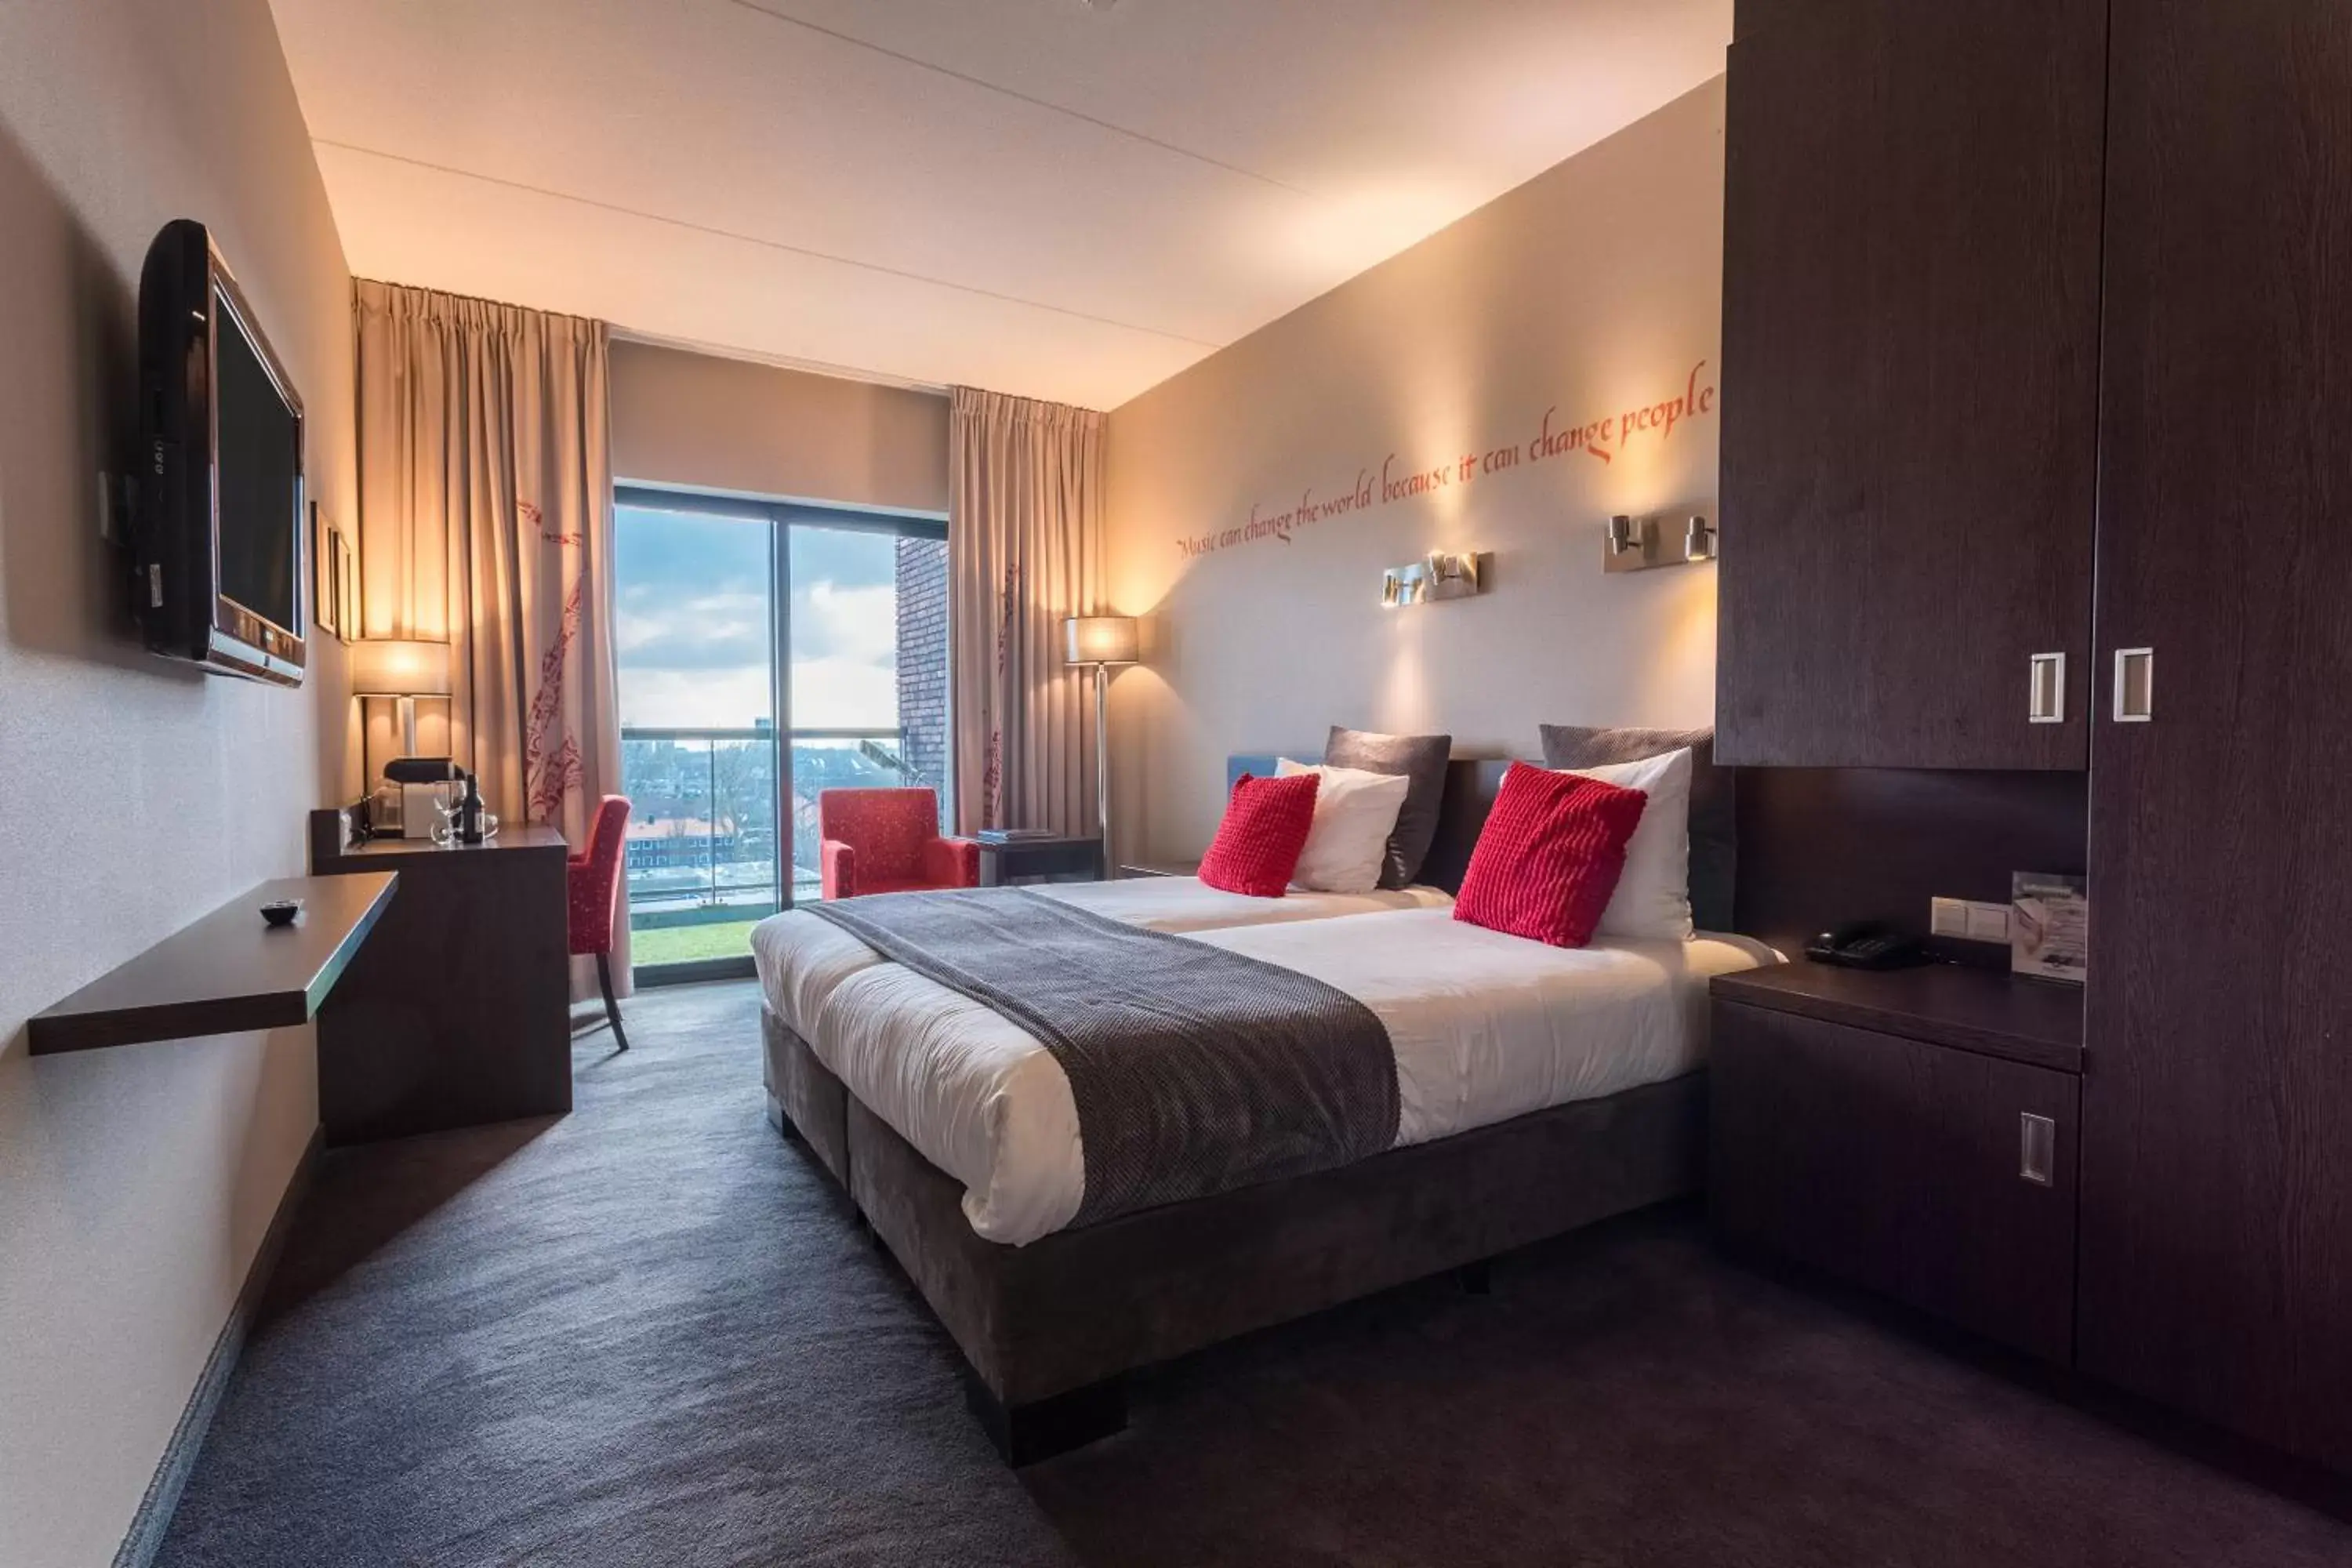 Bed in Hampshire Hotel - Delft Centre